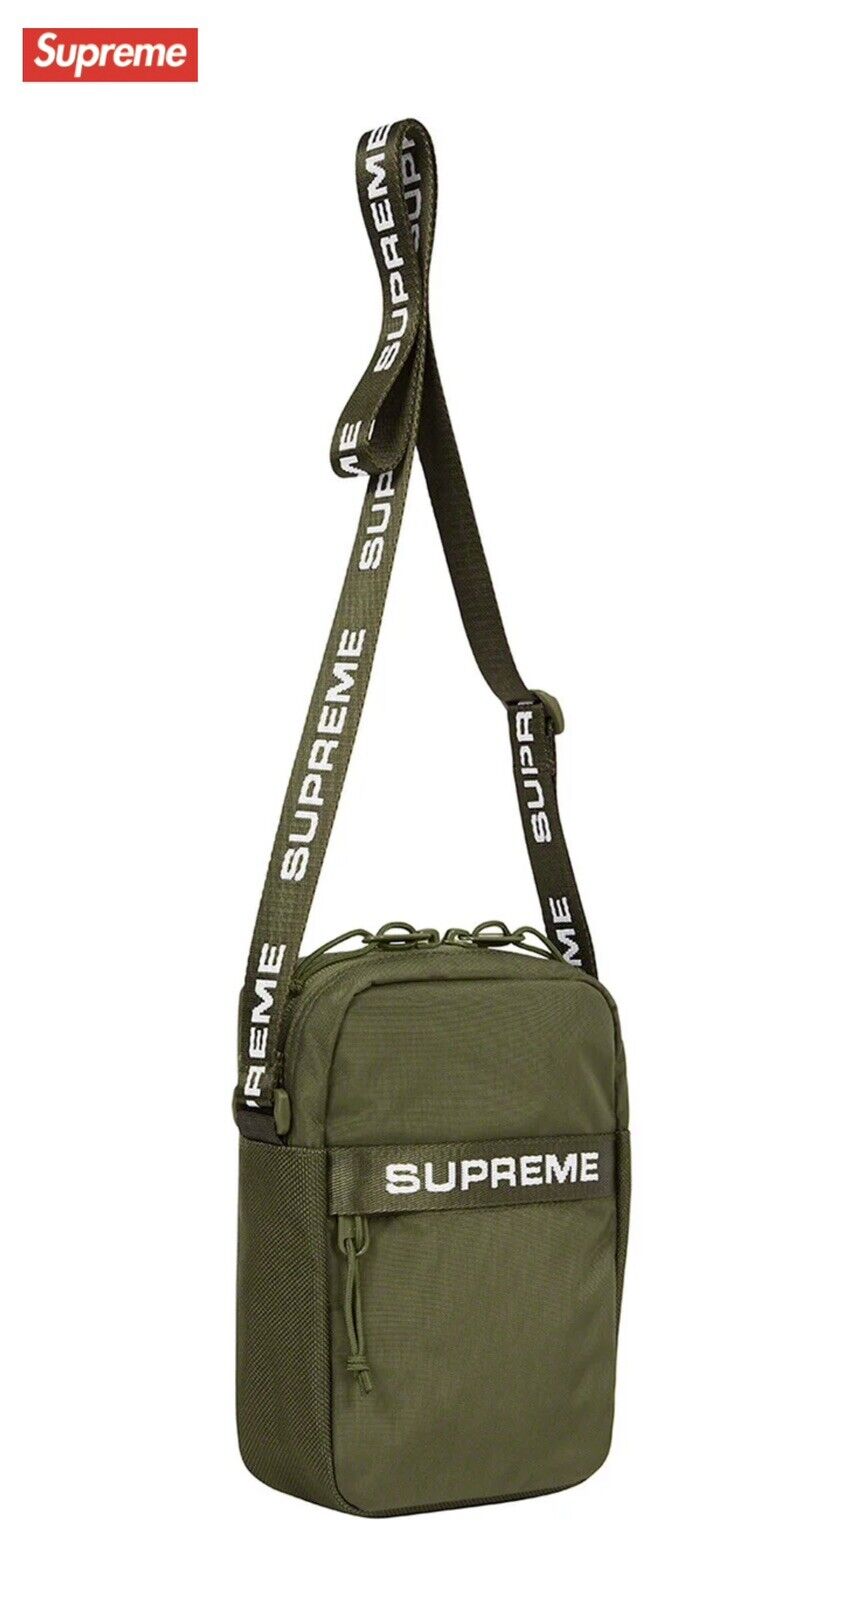 再再再..販 supreme shoulder bag オンライン購入